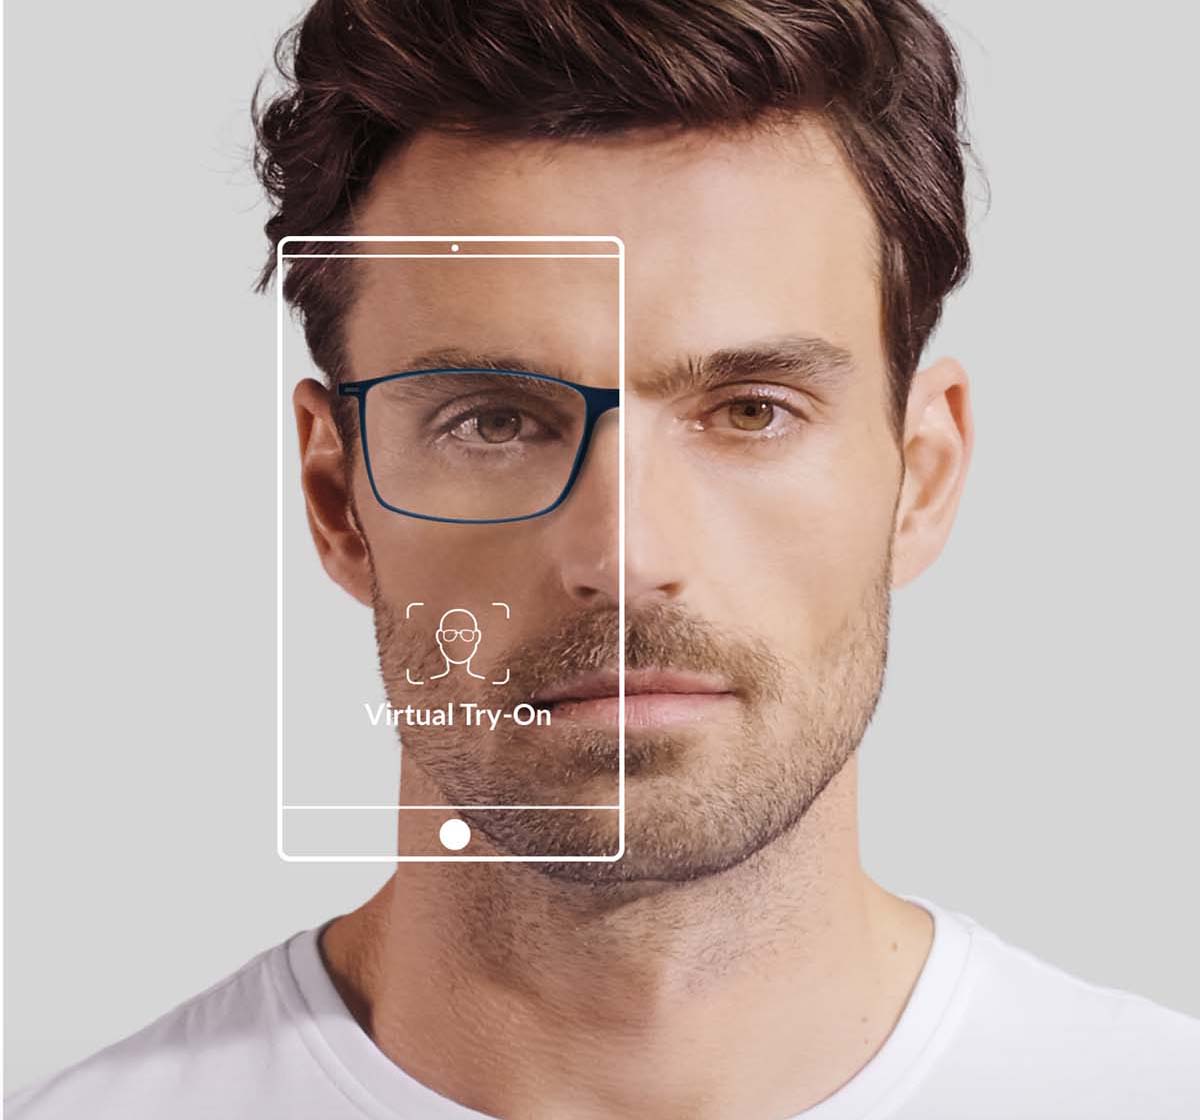 Conveniente dividendo Mitones Silhouette lanza un nuevo probador de gafas virtual - Optimoda